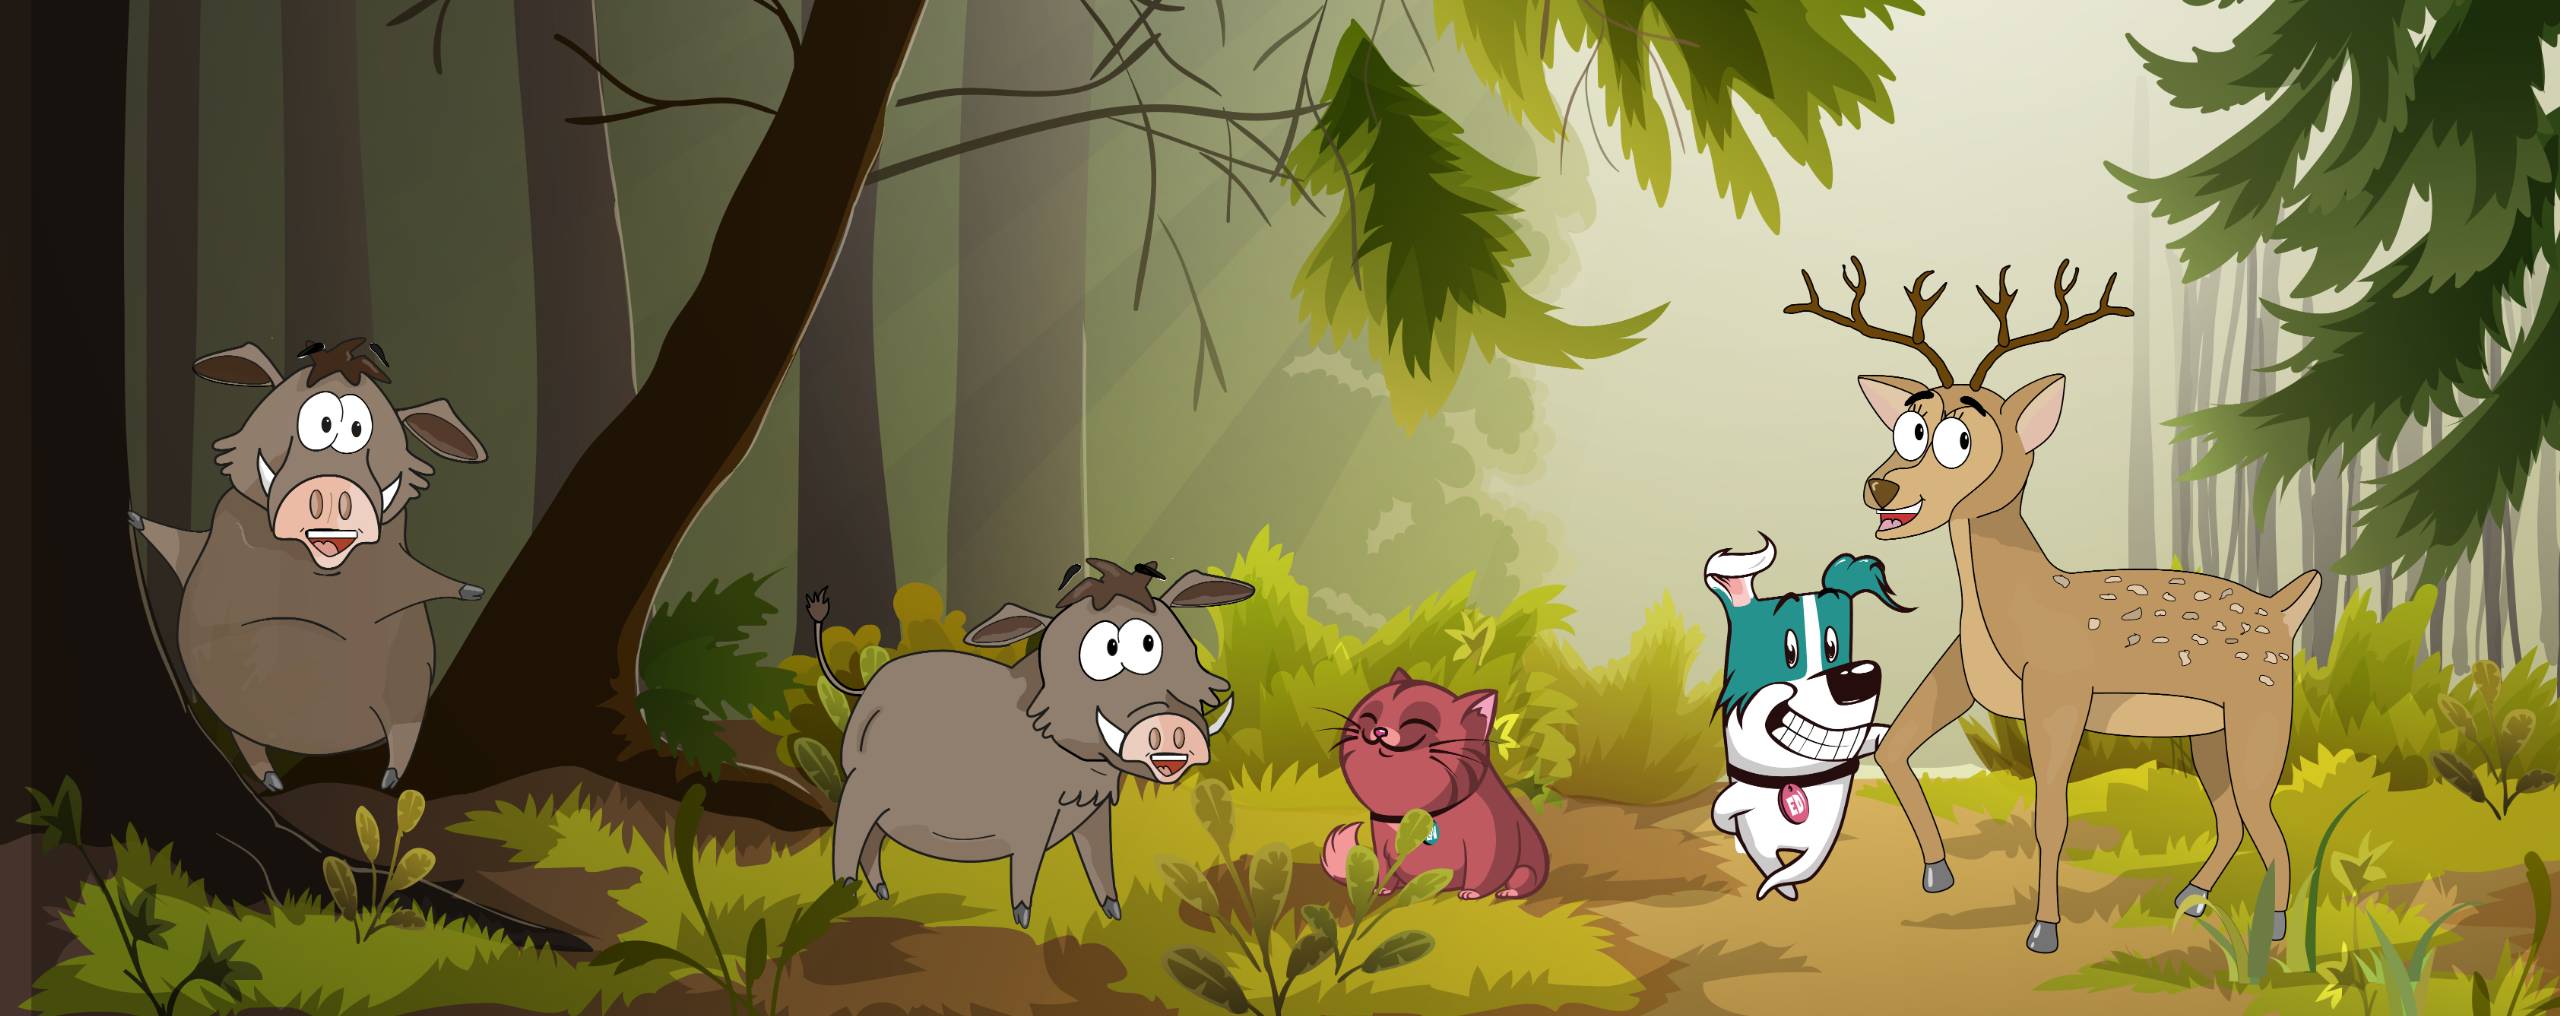 Cartoon-gezeichneter Wald mit Tieren und der Katze Lov und den Hund Ed